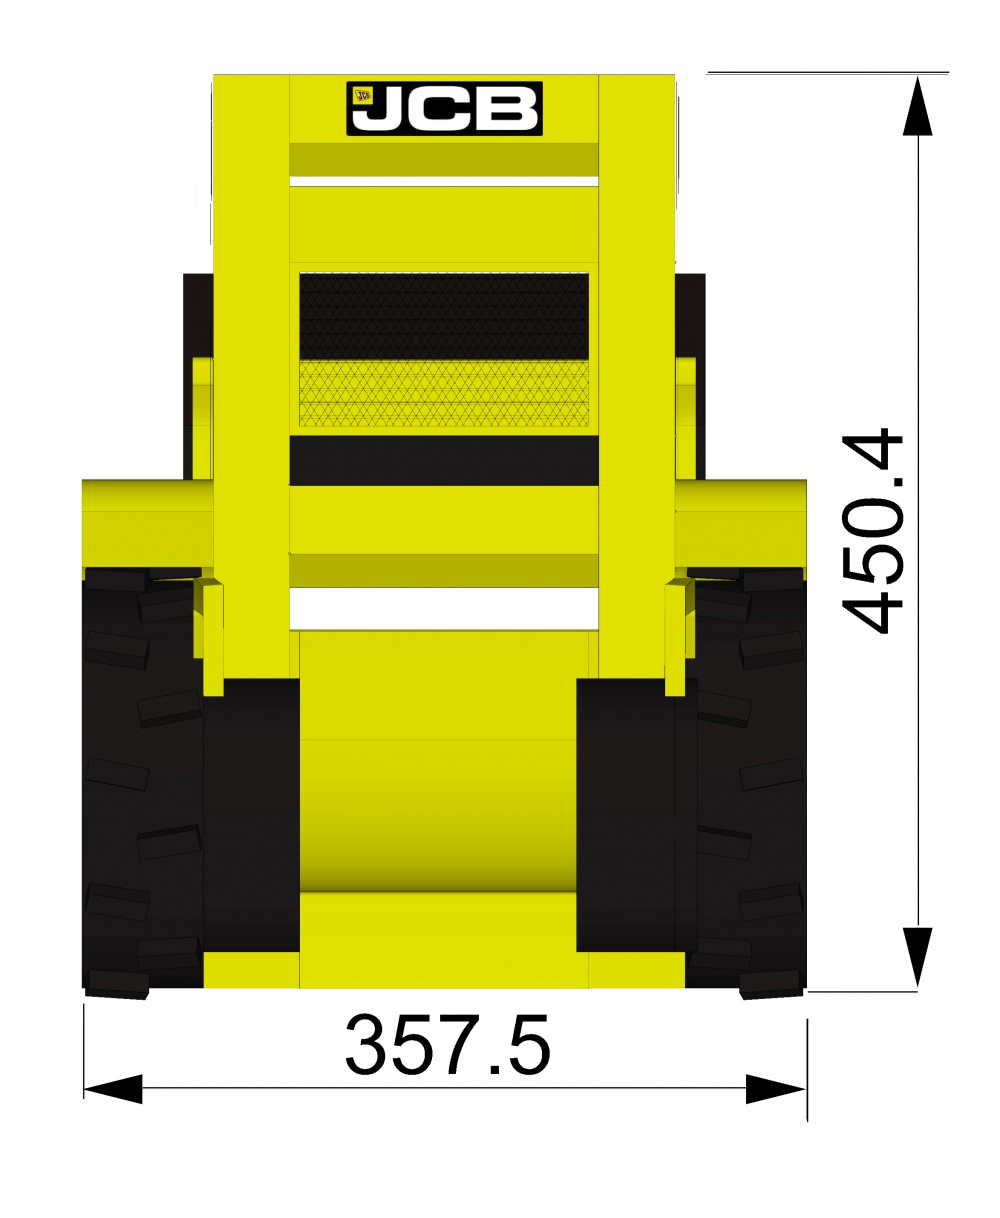 stormbaan bulldozer 8,5m